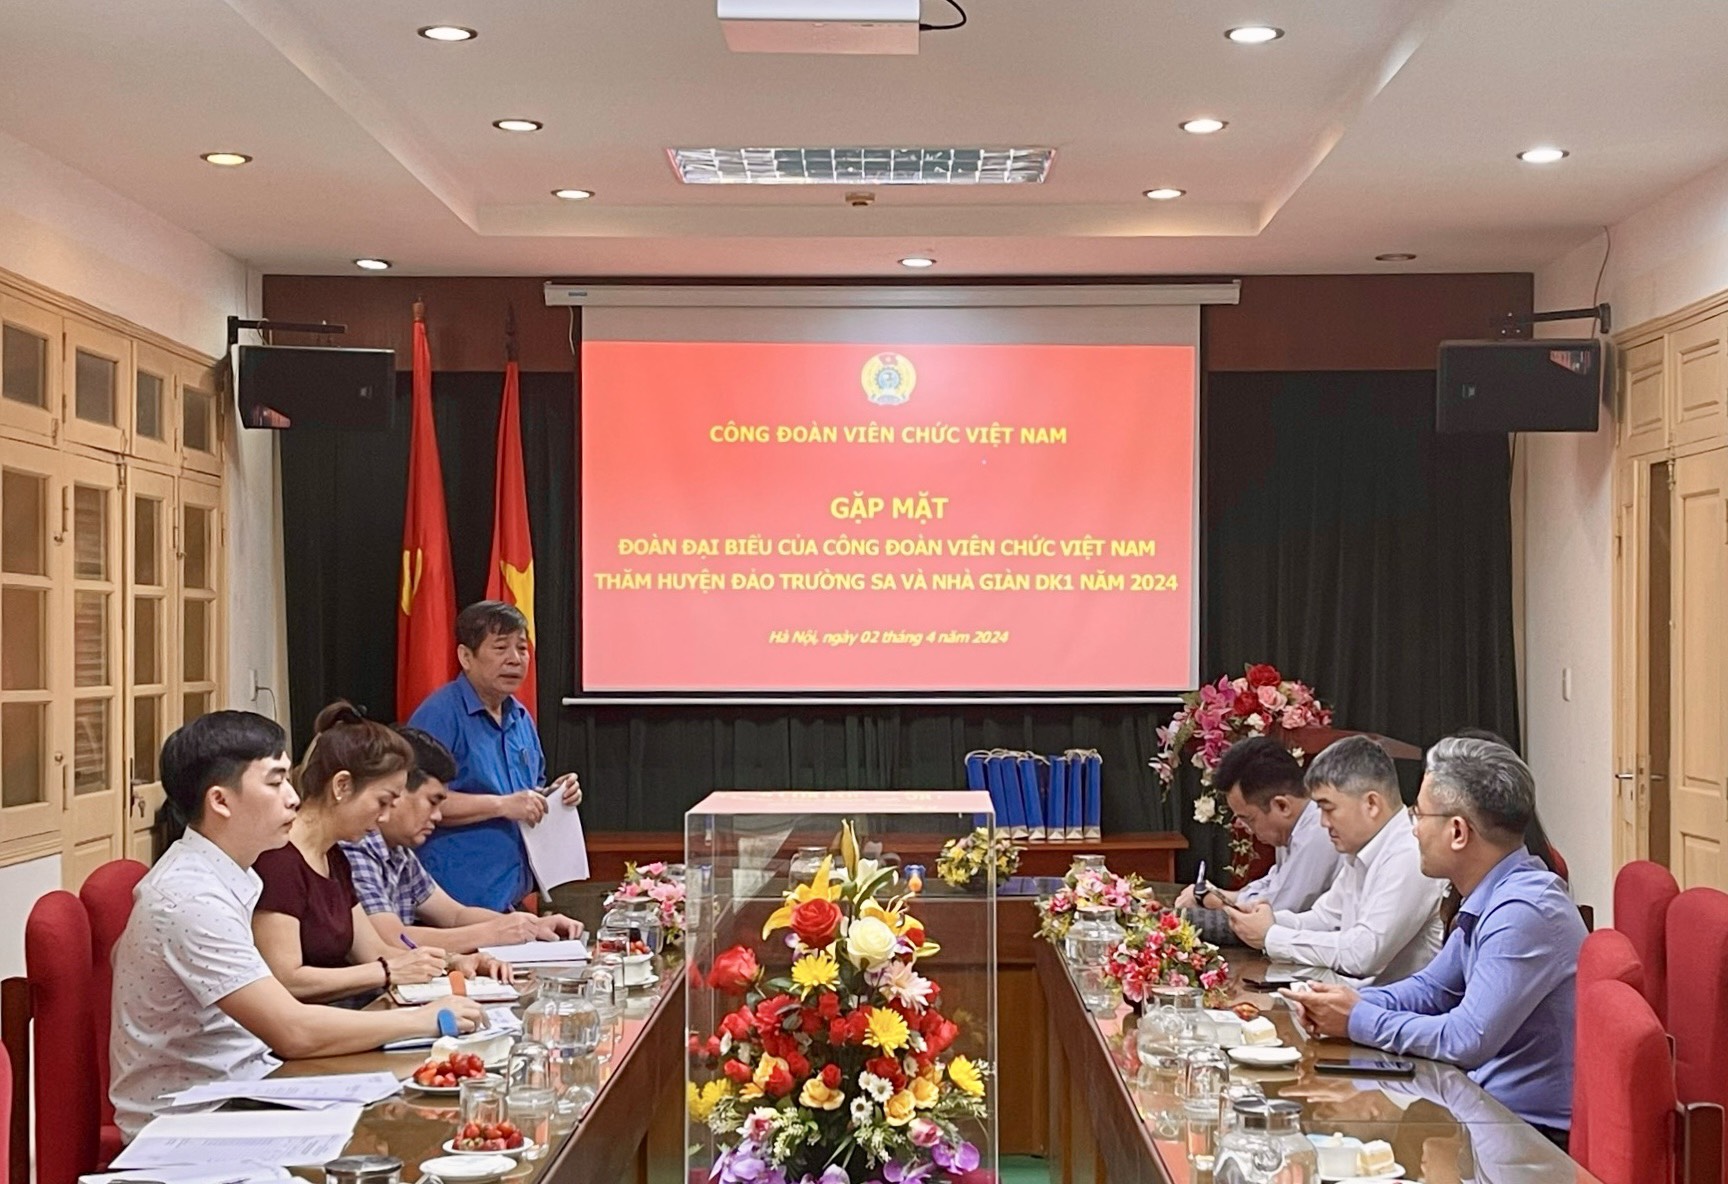 Gặp mặt Đoàn đại biểu Công đoàn Viên chức Việt Nam thăm huyện đảo Trường Sa năm 2024